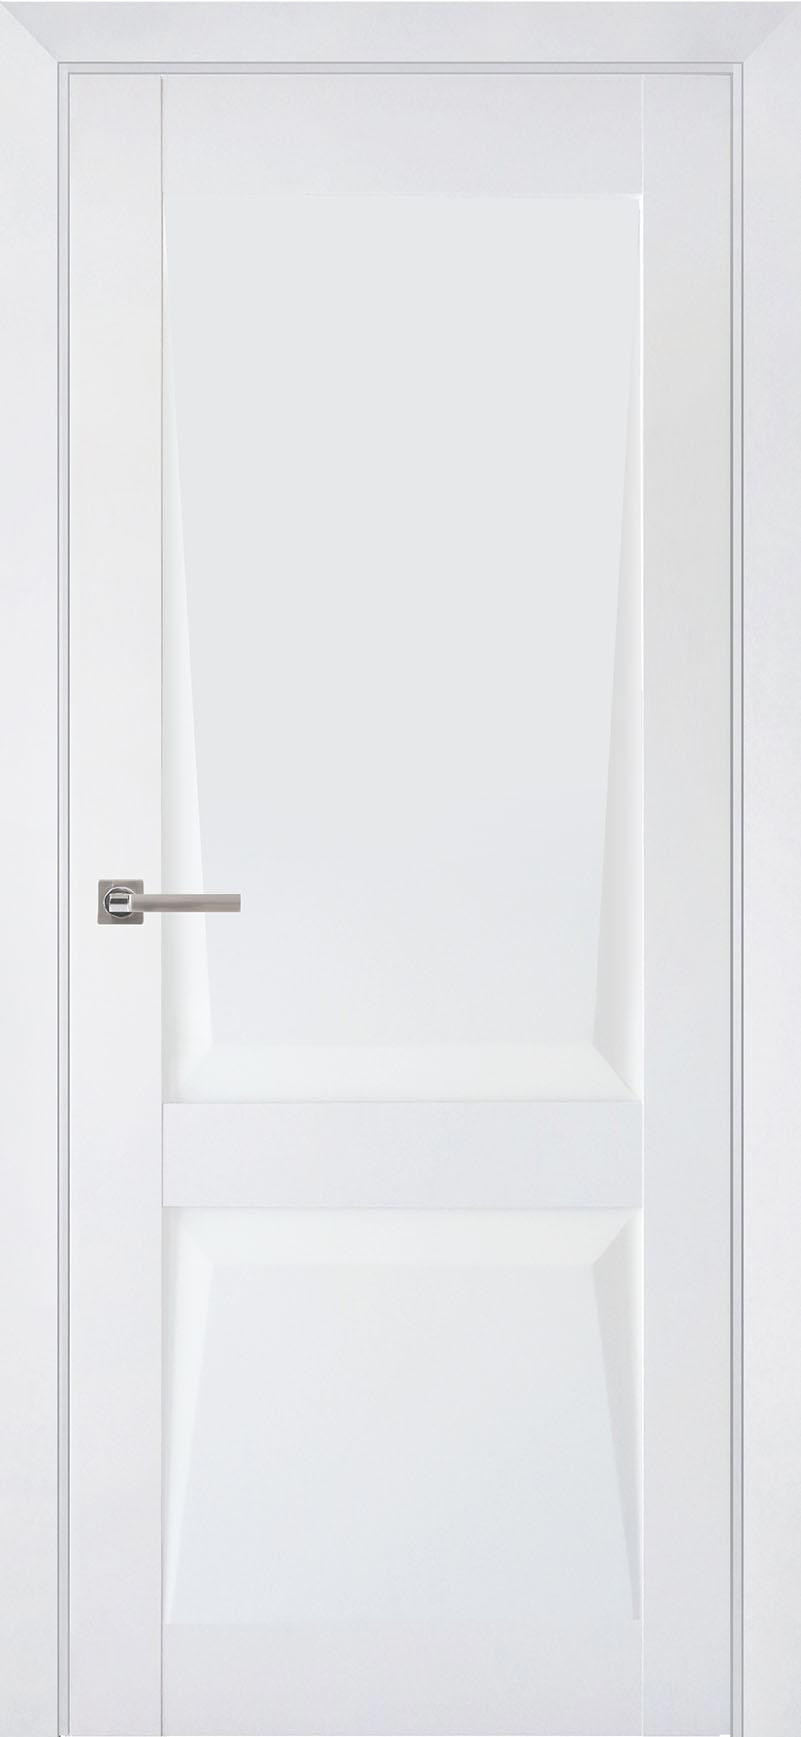 90903209 Межкомнатная дверь Перфекто 101 глухая без замка и петель в комплекте 200x70см белый STLM-0420035 UBERTURE